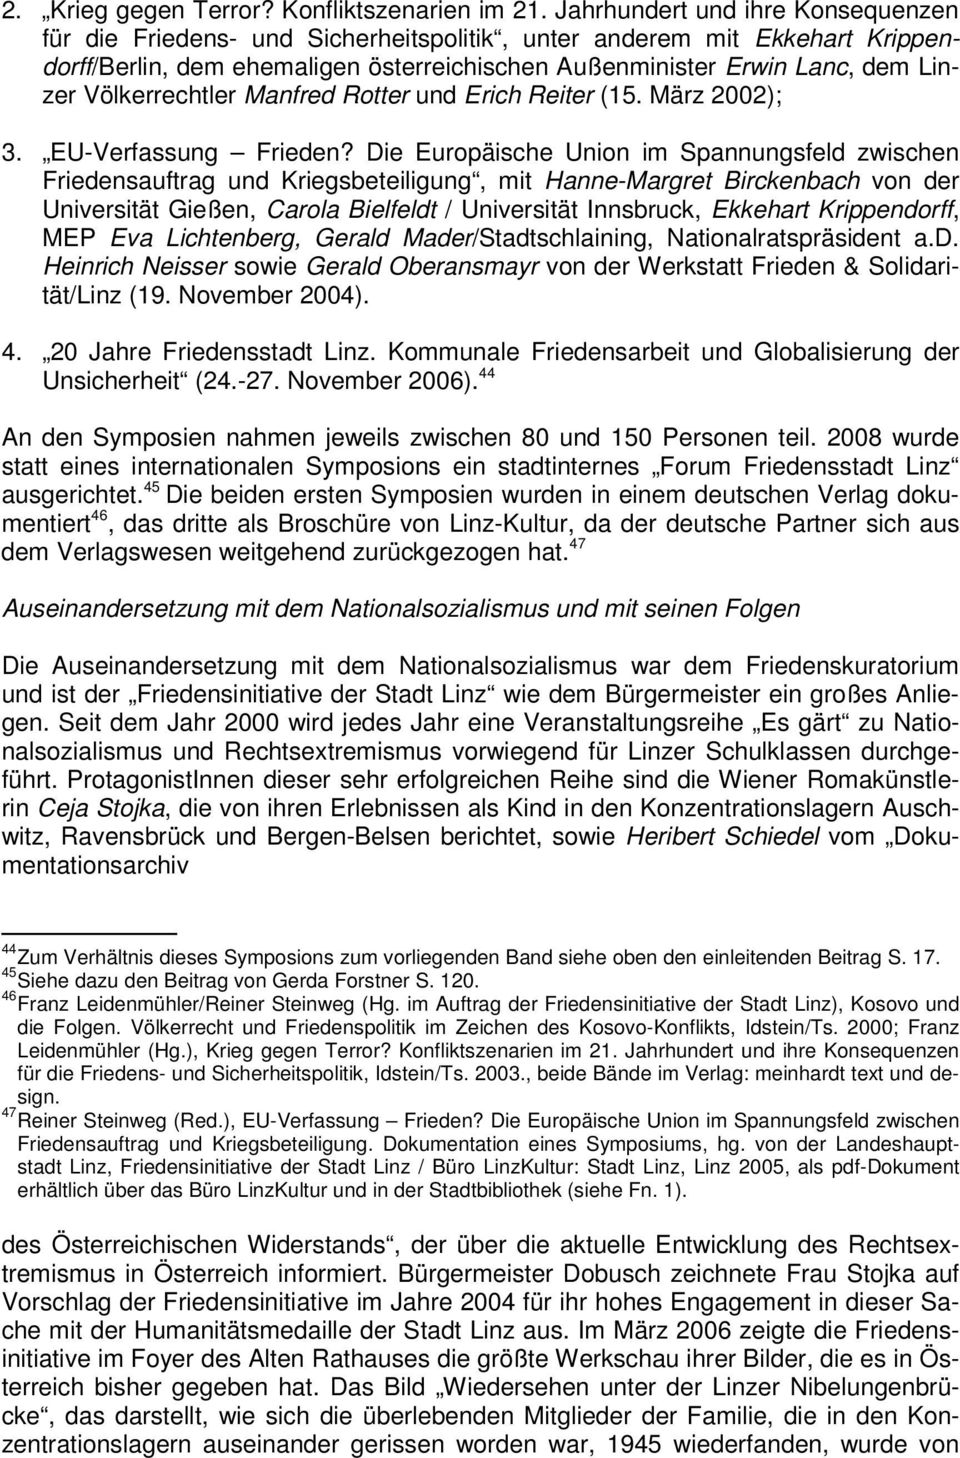 Völkerrechtler Manfred Rotter und Erich Reiter (15. März 2002); 3. EU-Verfassung Frieden?